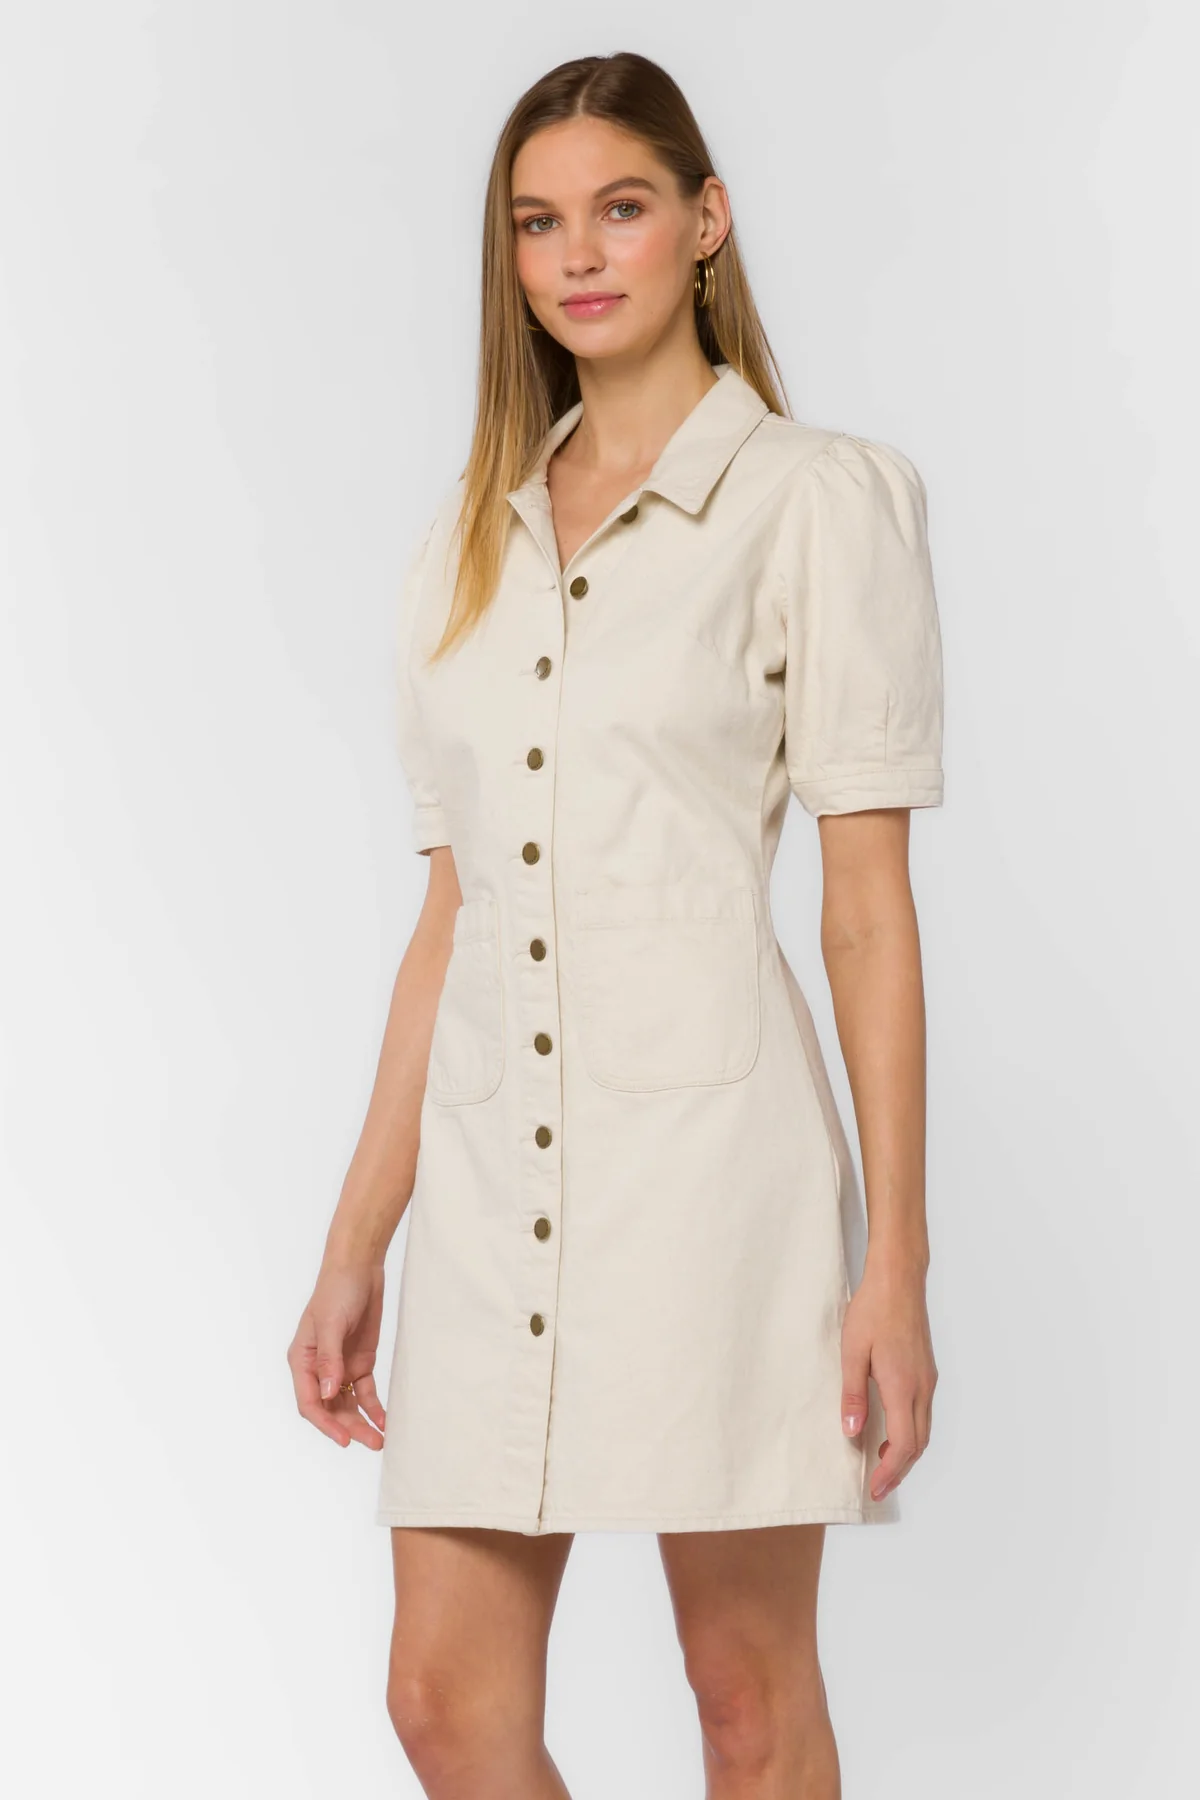 Romina Ivory Button Up Dress | Ecru front